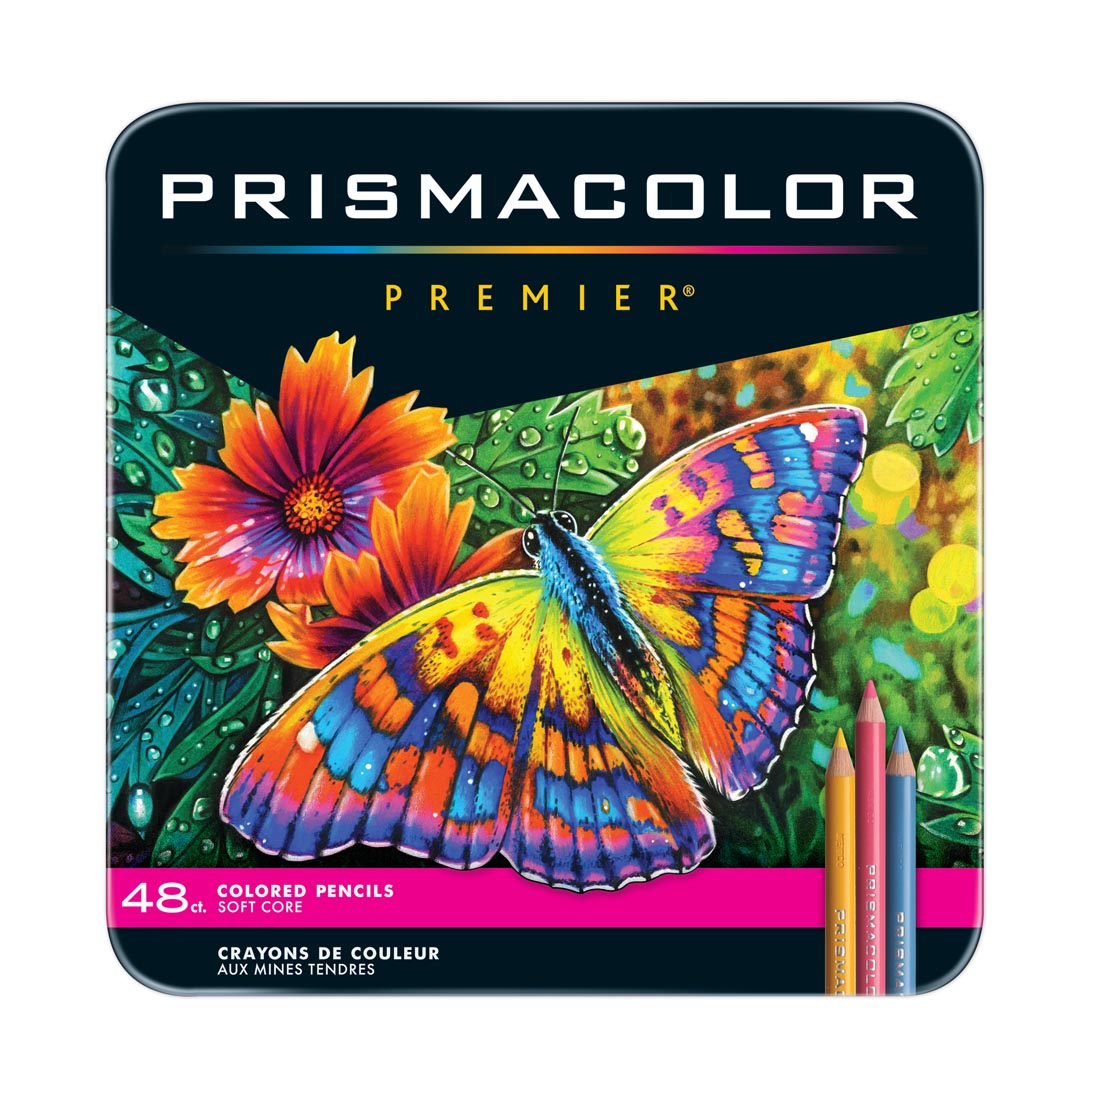 Prismacolor Premier Colored Pencils 48-Color Set